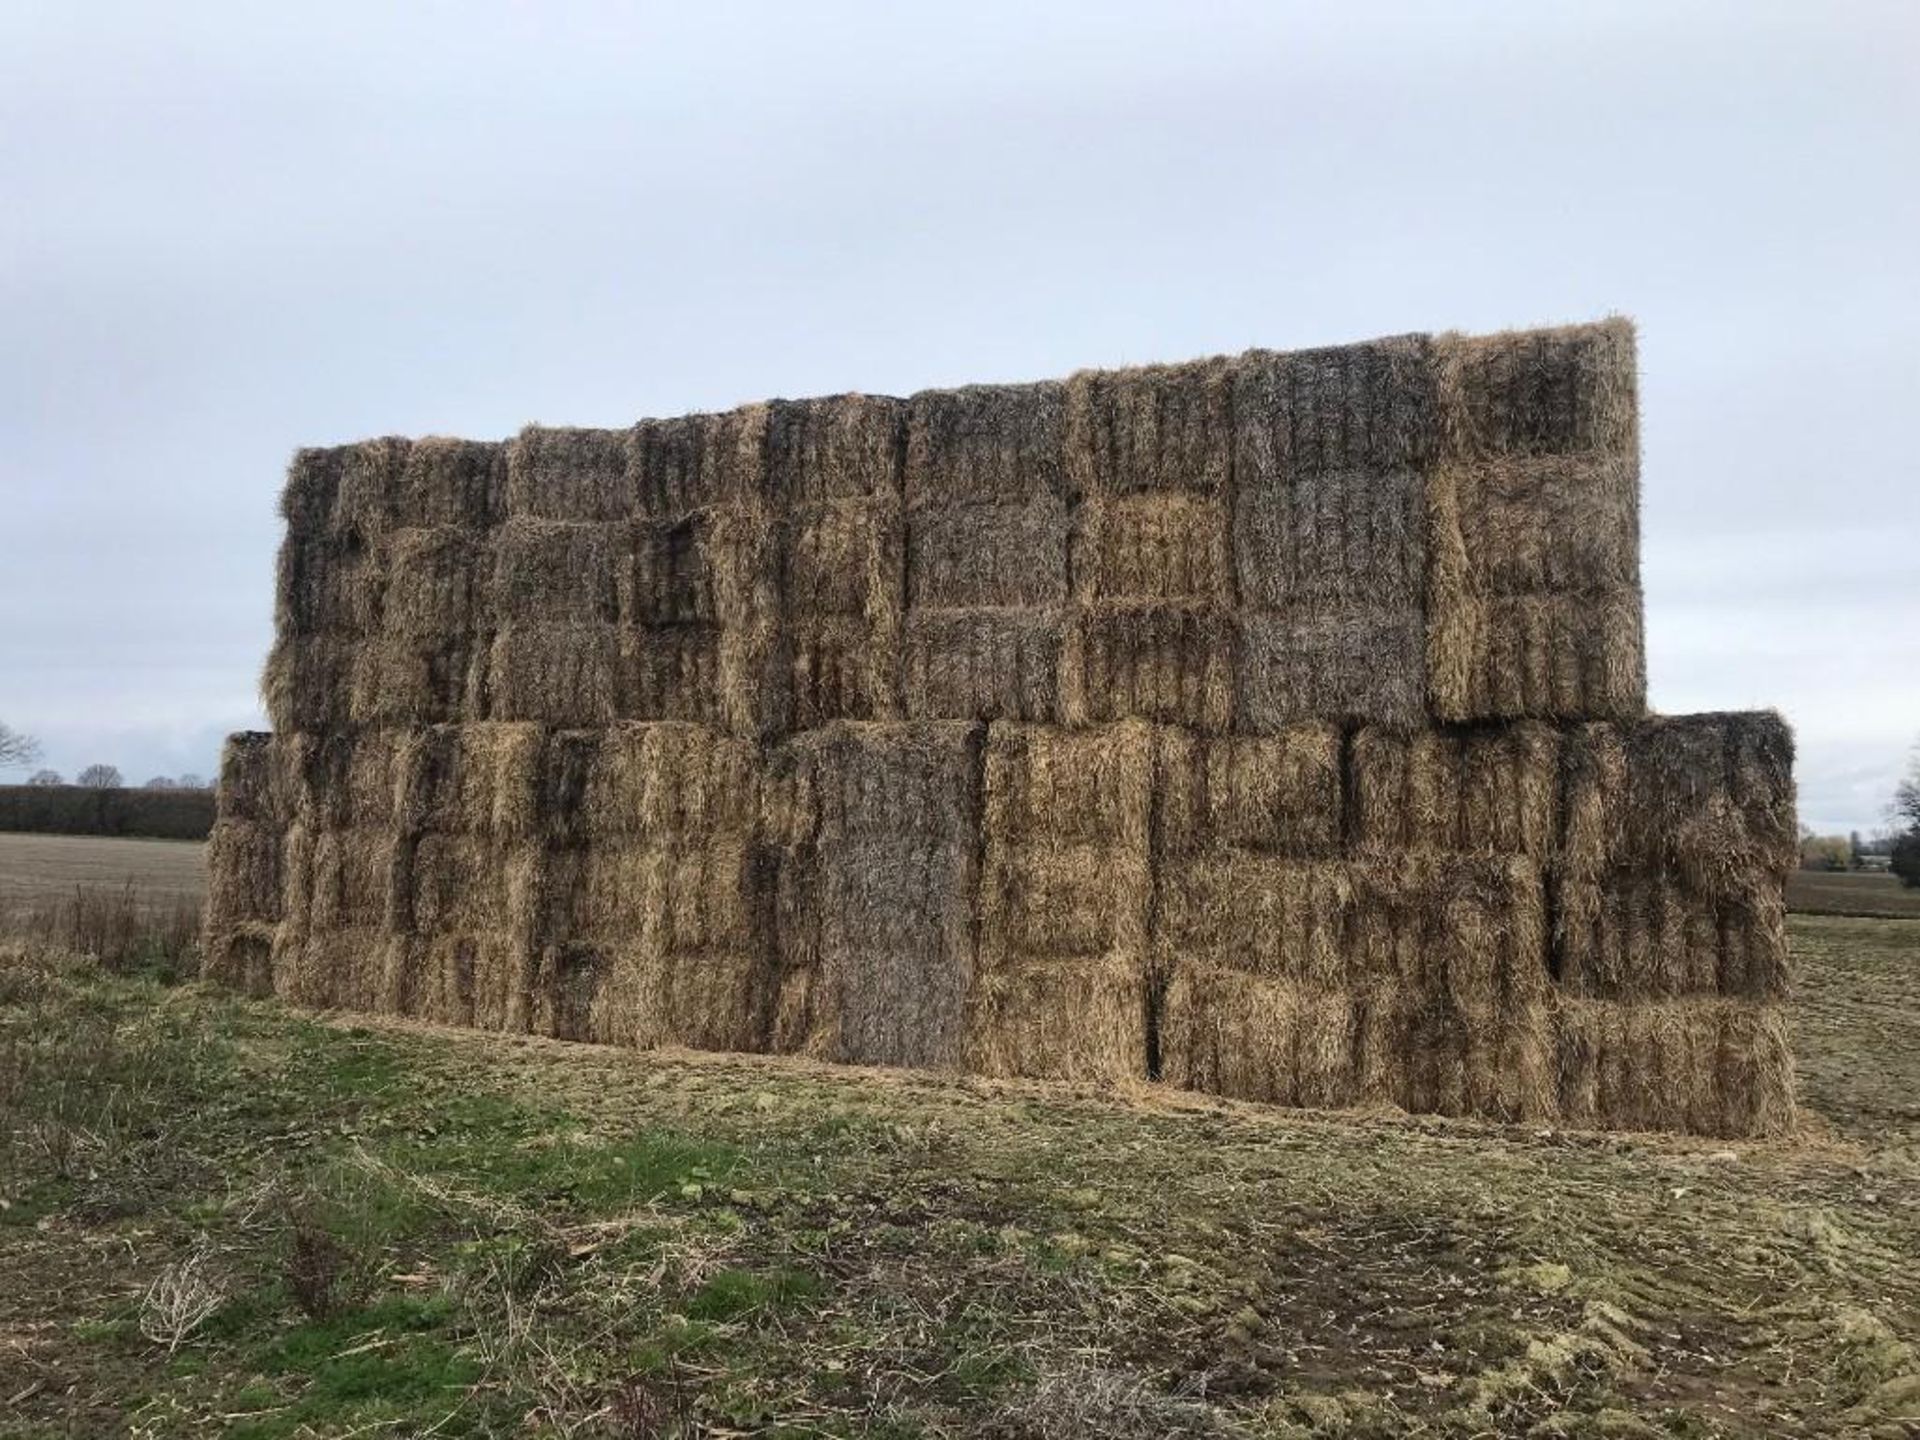 85No. 2021 Winter Barley Straw Bales